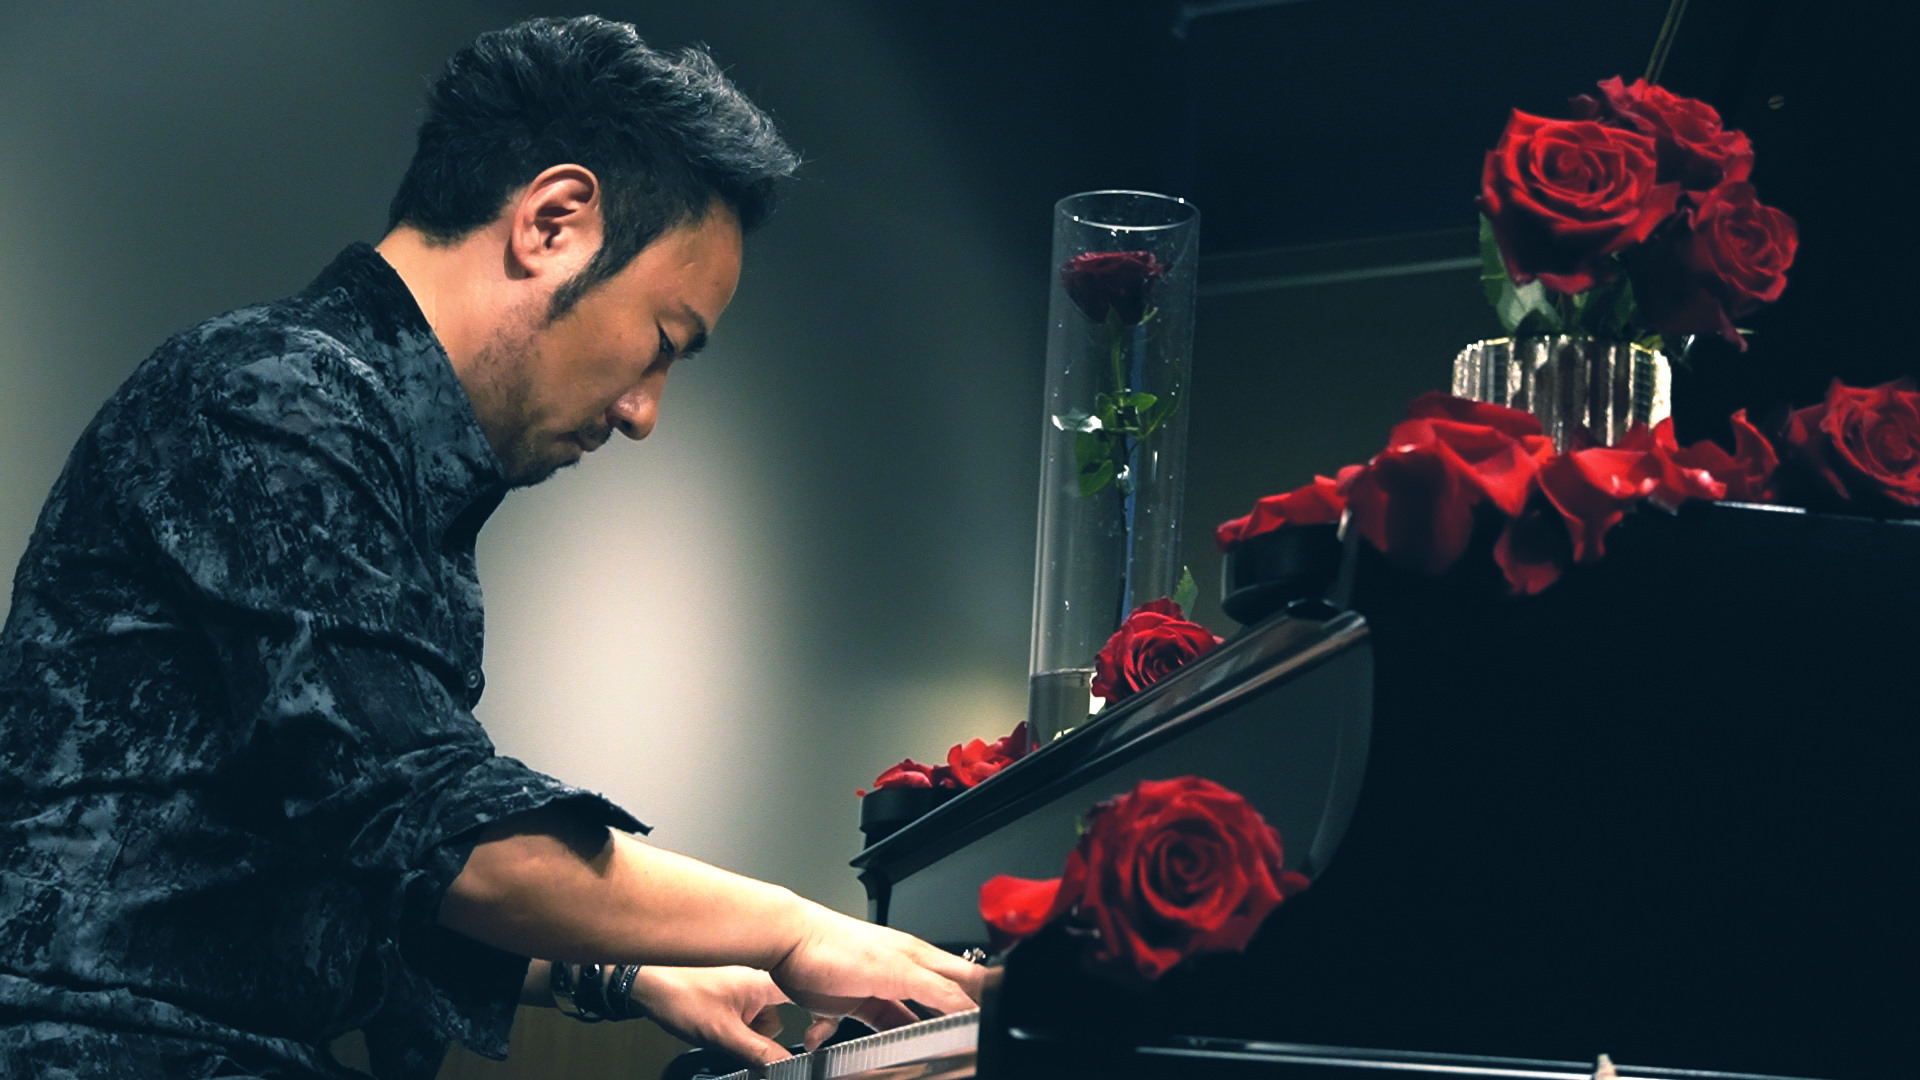 奇跡の「7本指」のピアニスト・西川悟平によるスペシャルライヴ！
唯一無二の演奏で世界中の観客を魅了するピアニスト 
西川悟平が再び東洋の文化と出会う特別なステージを開催！